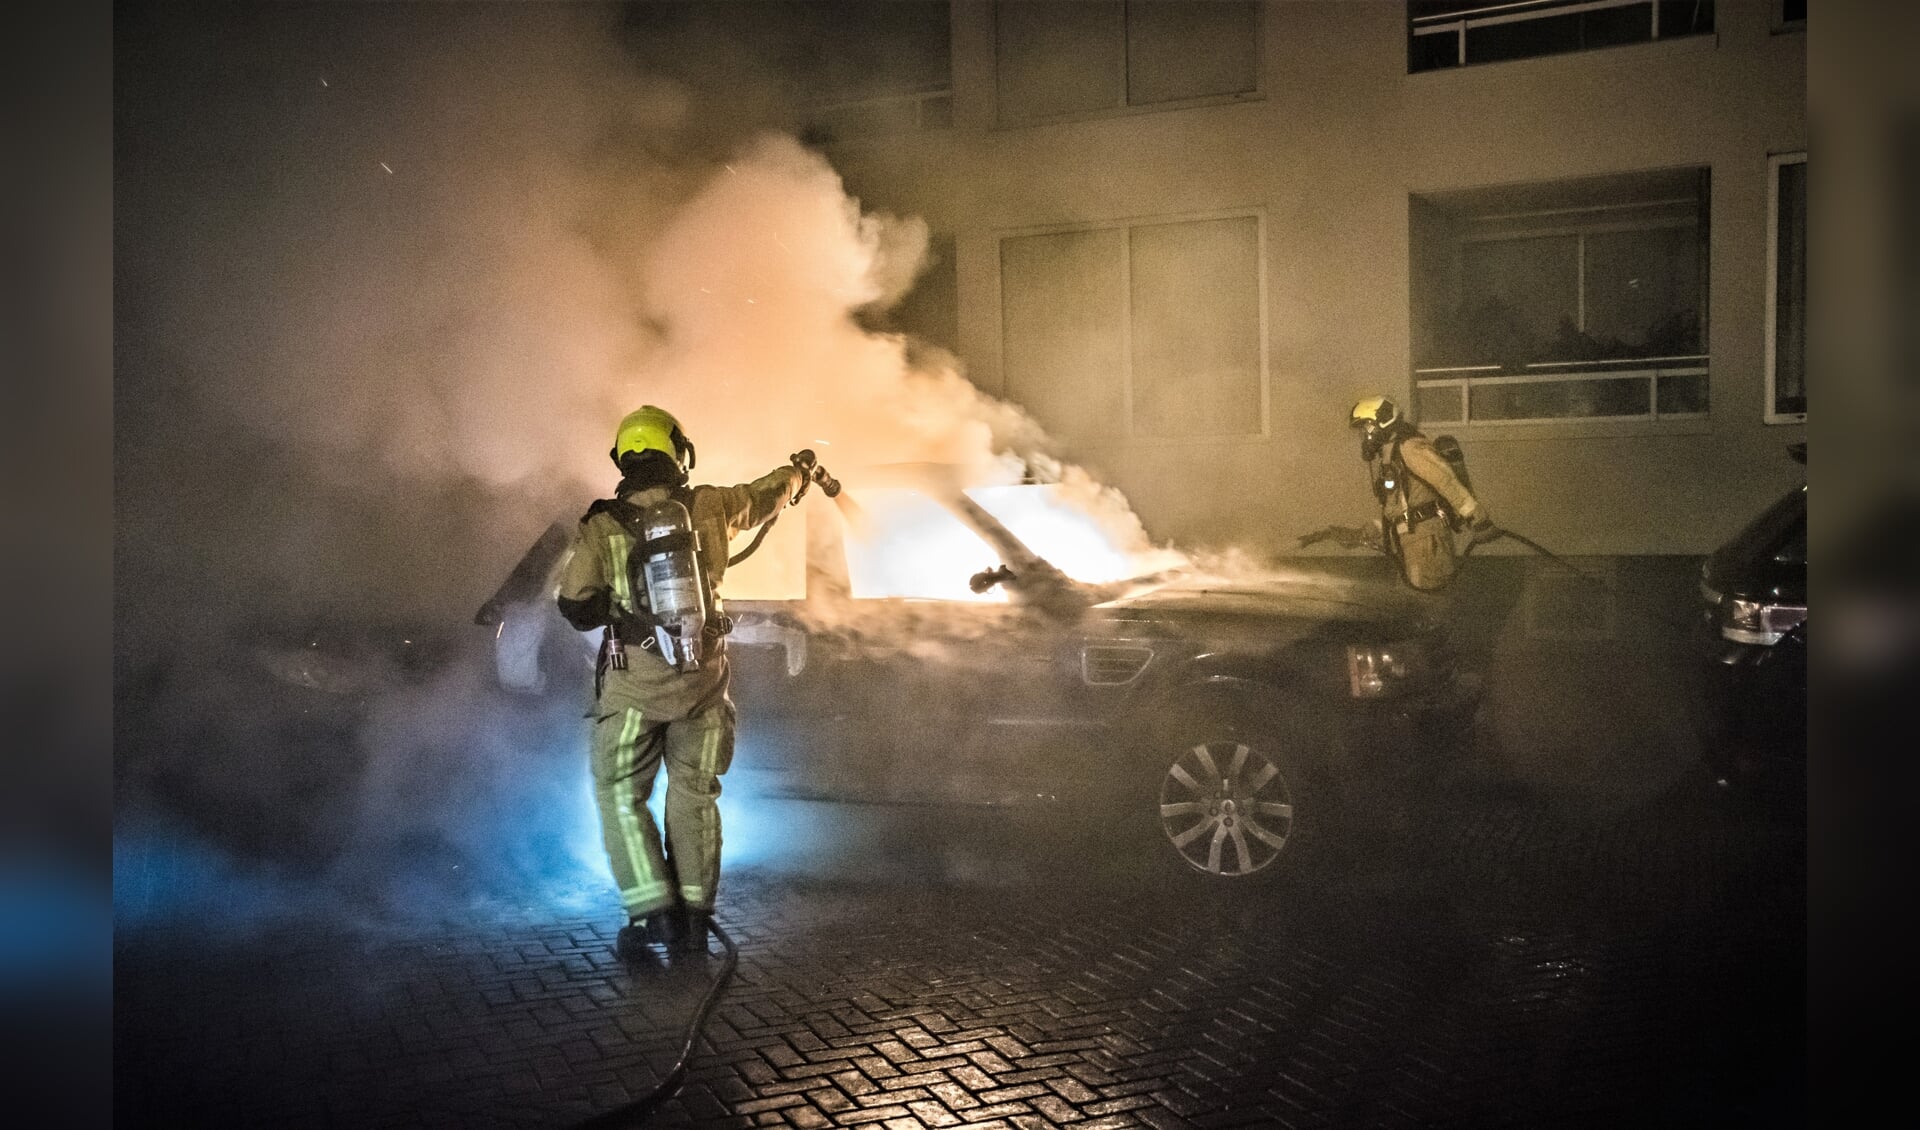 Ondanks het snelle optreden van de brandweer kon niet worden voorkomen dat de Range Rover werd verwoest (foto: Sebastiaan Barel).